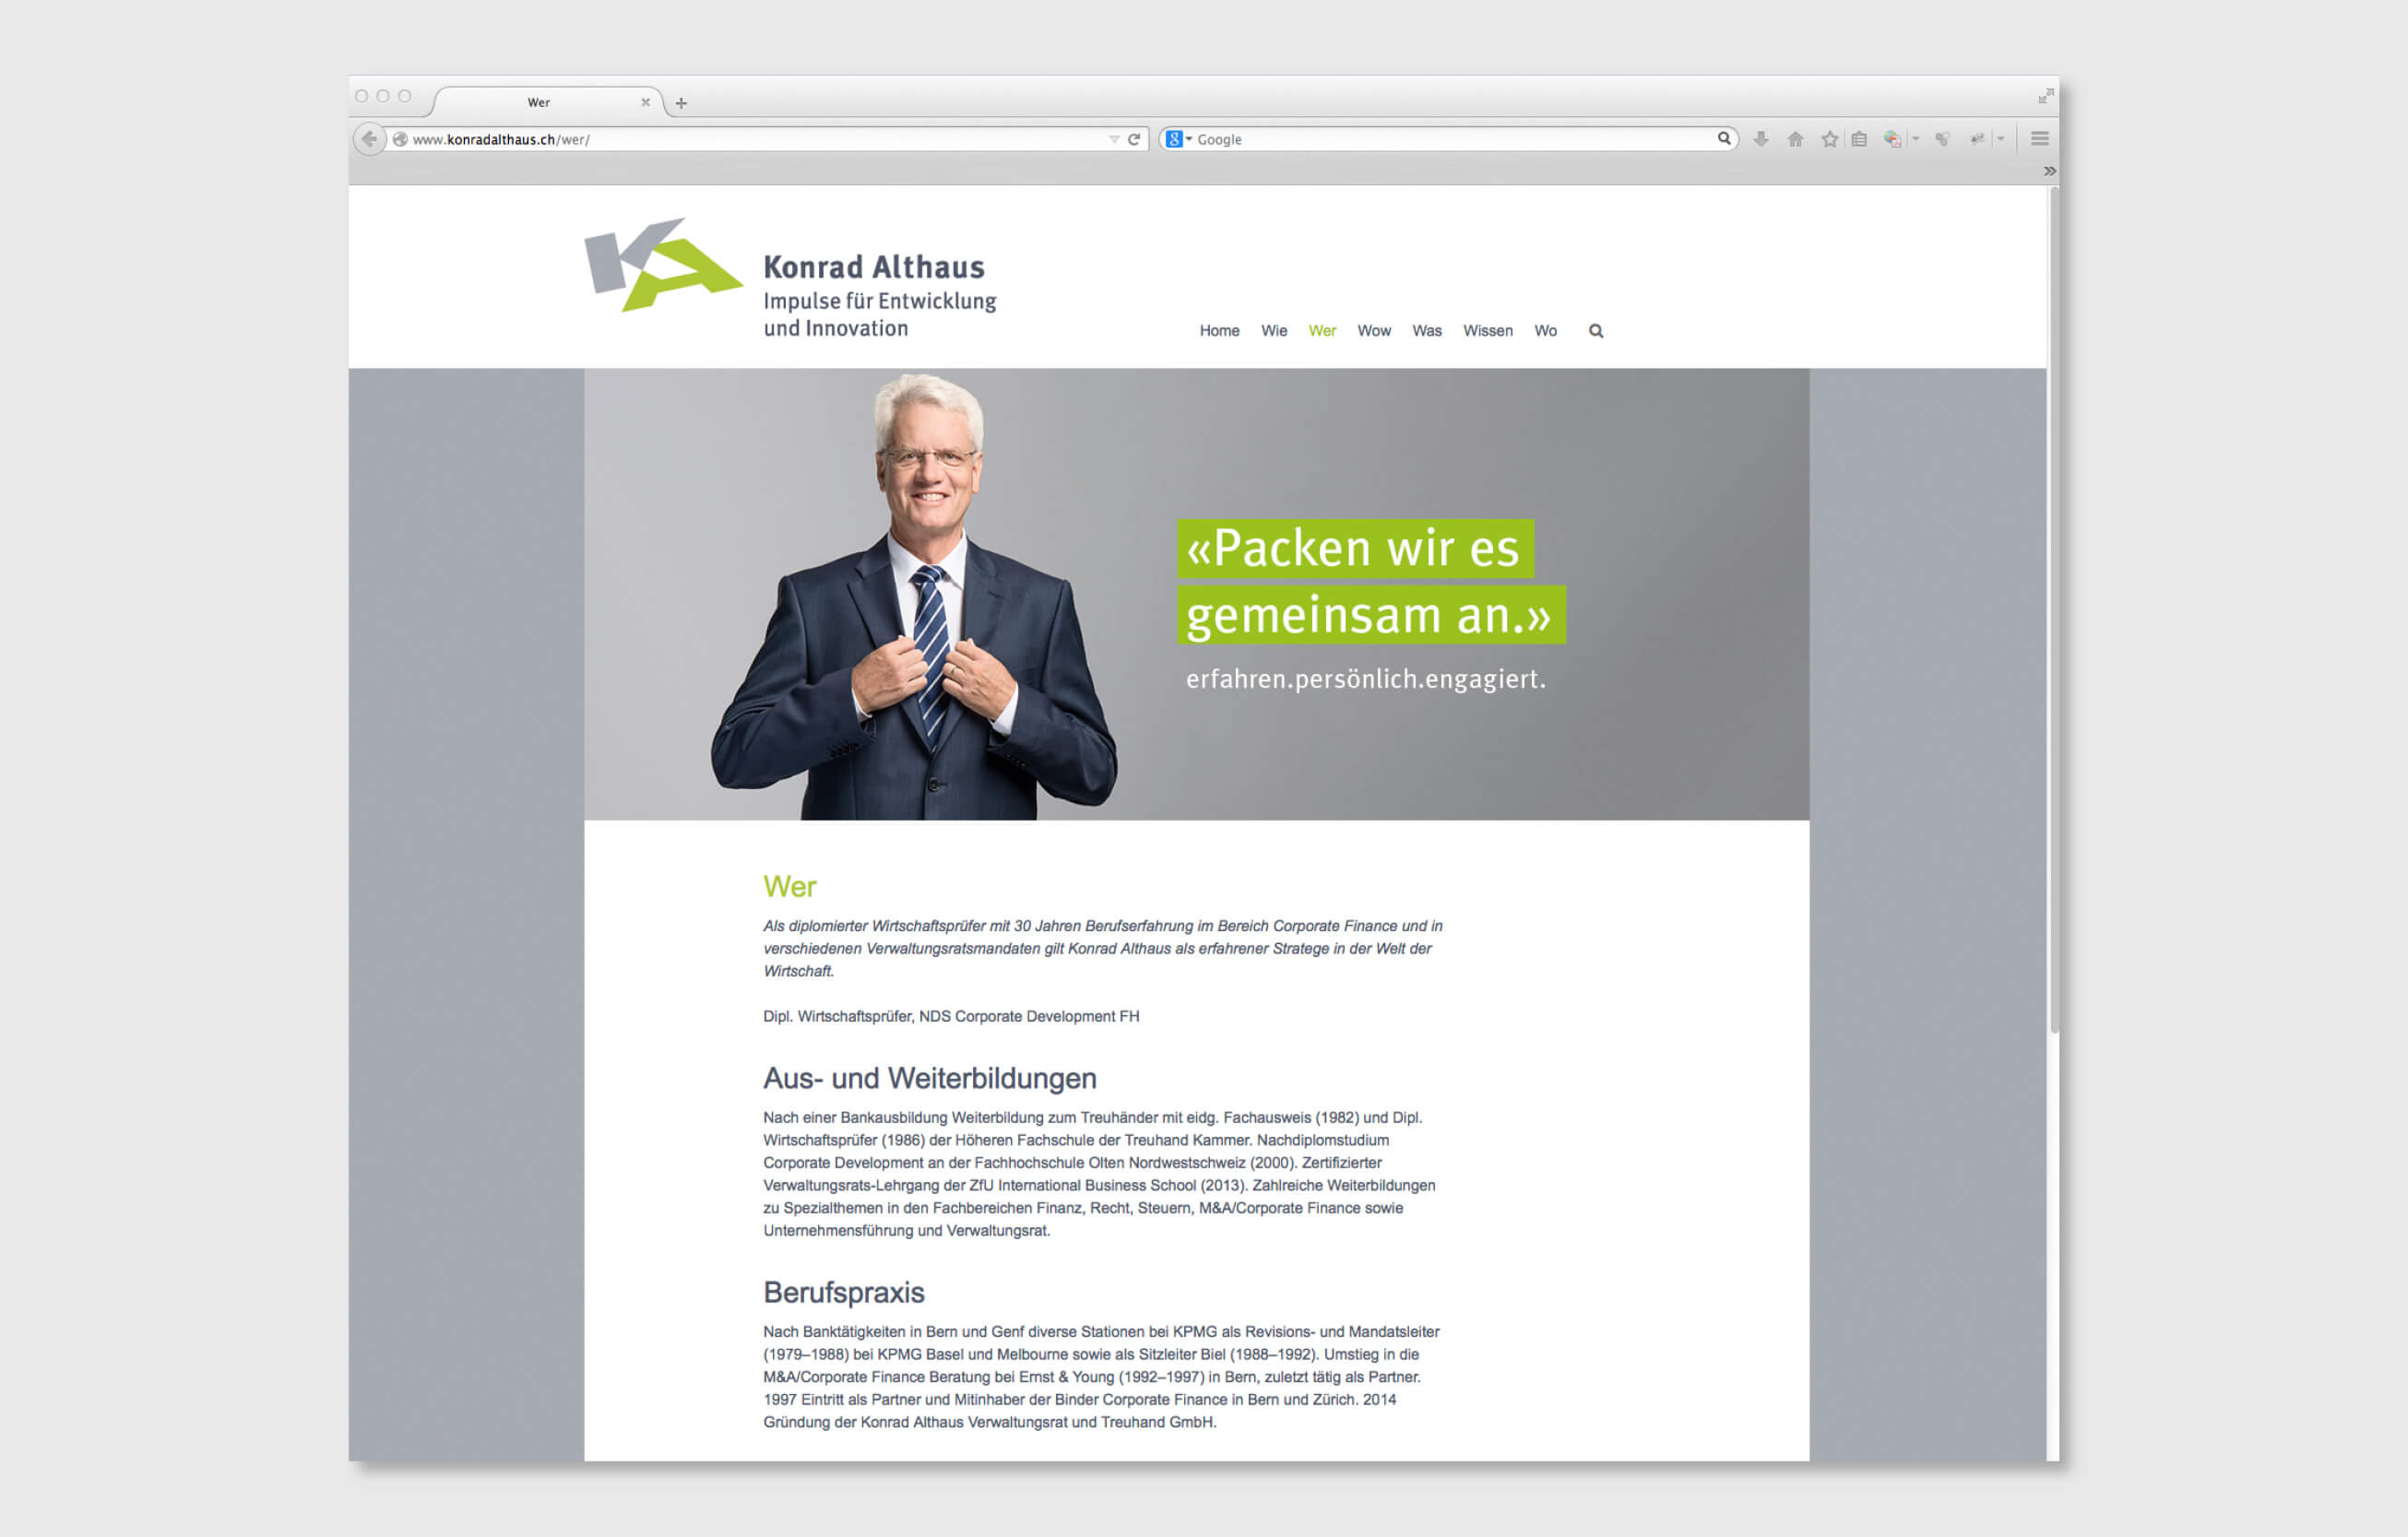 Konrad Althaus webdesign consign identity